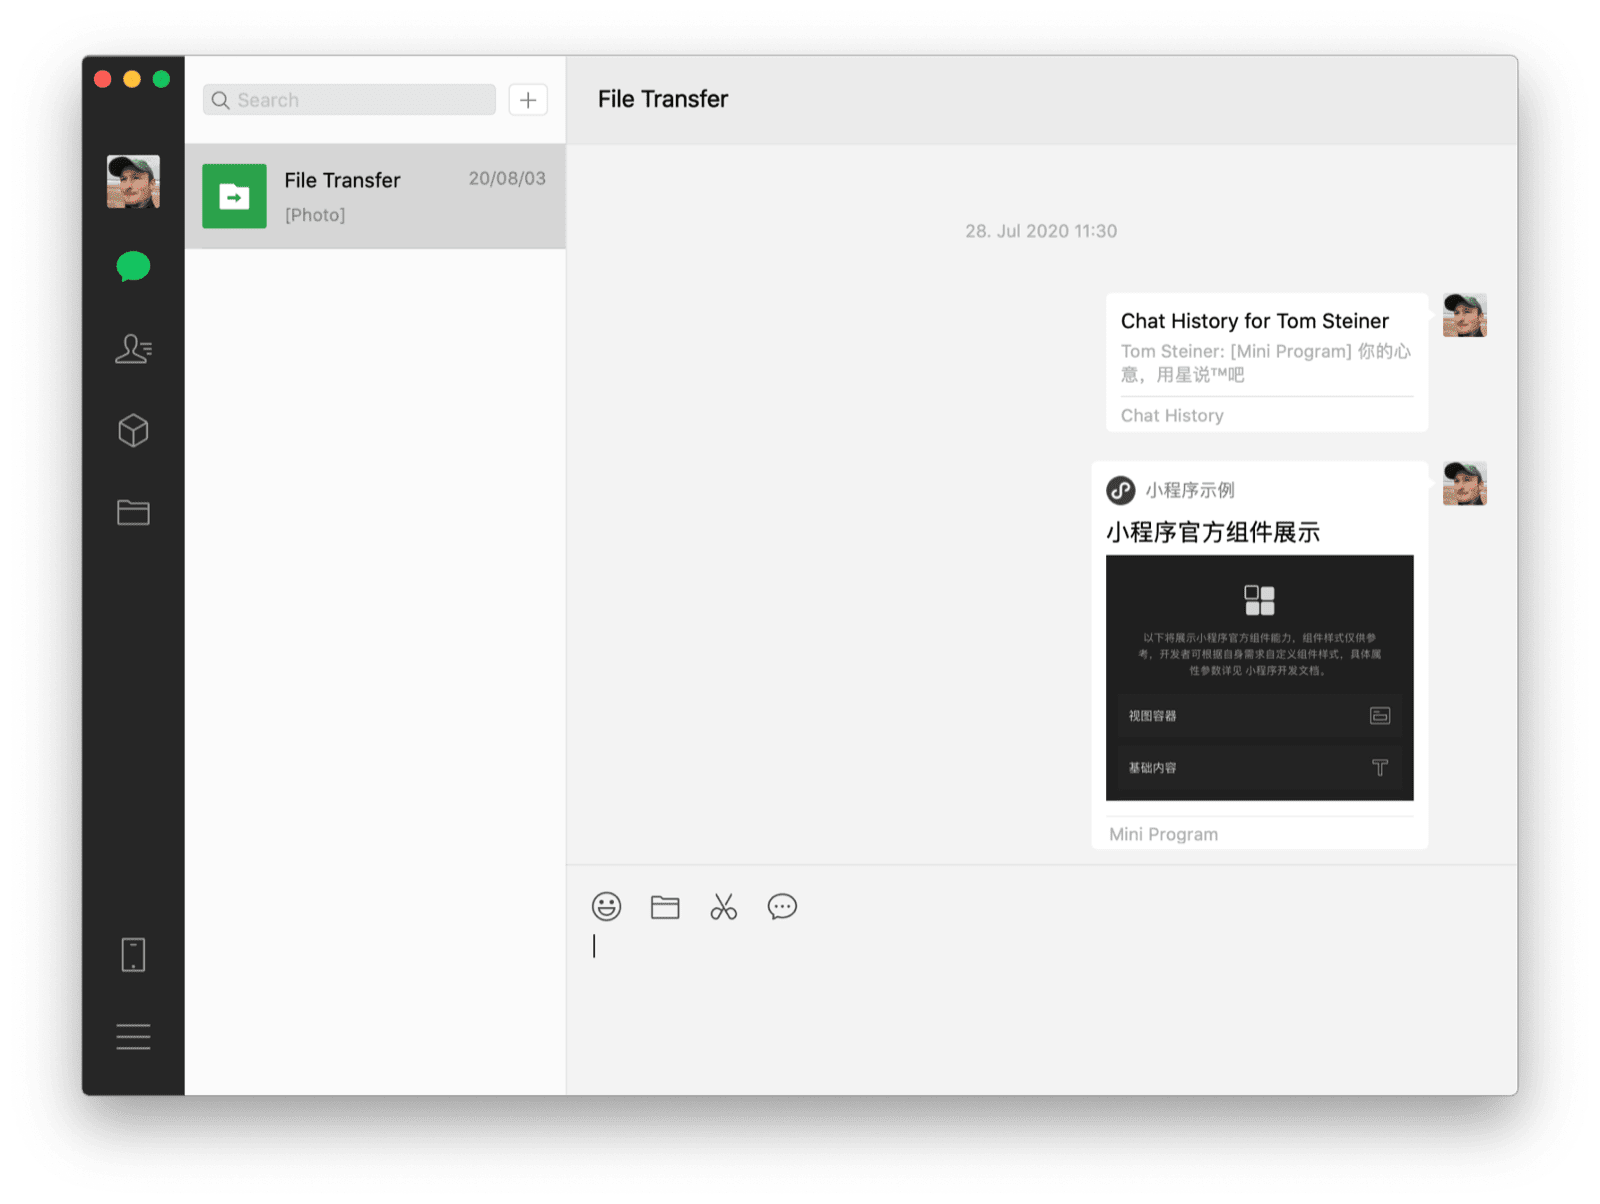 Klien desktop WeChat macOS menampilkan chat dengan diri sendiri dengan aplikasi mini bersama dan histori chat sebagai dua pesan yang terlihat.